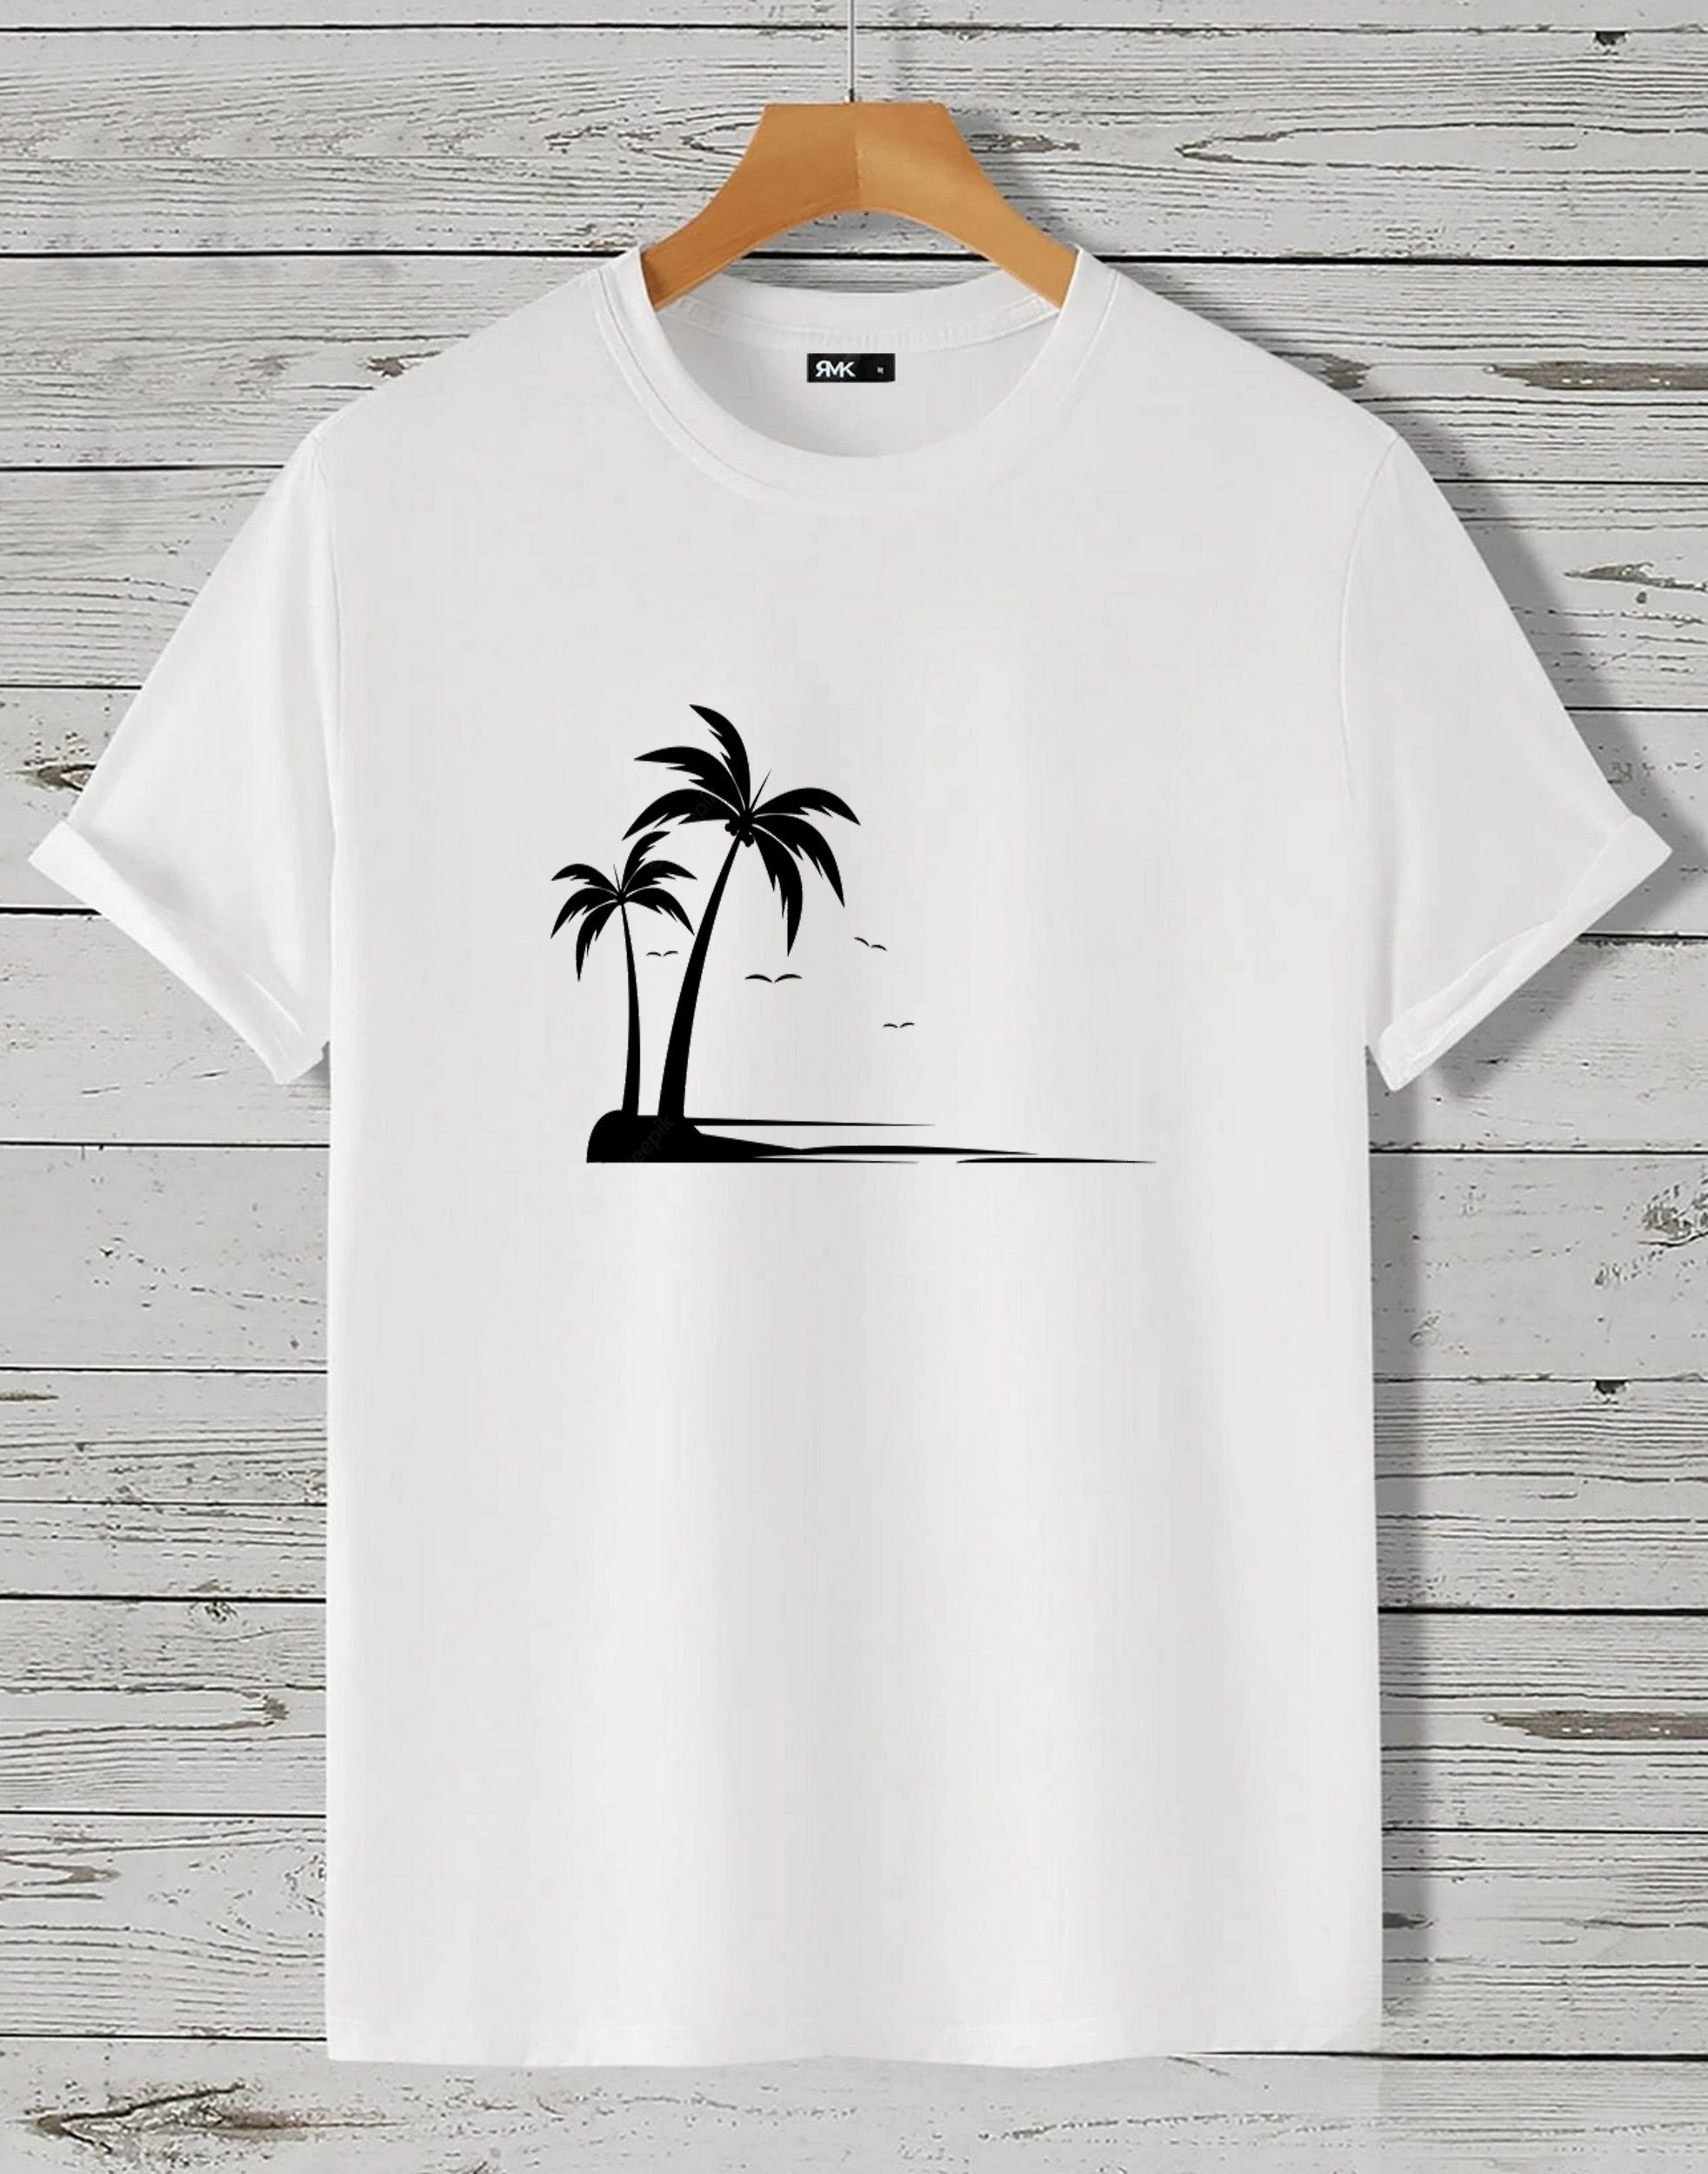 RMK T-Shirt Herren Unifarbe, Rundhals Baumwolle Shirt Insel Motiv in kurzarm aus The Beach" "Palme